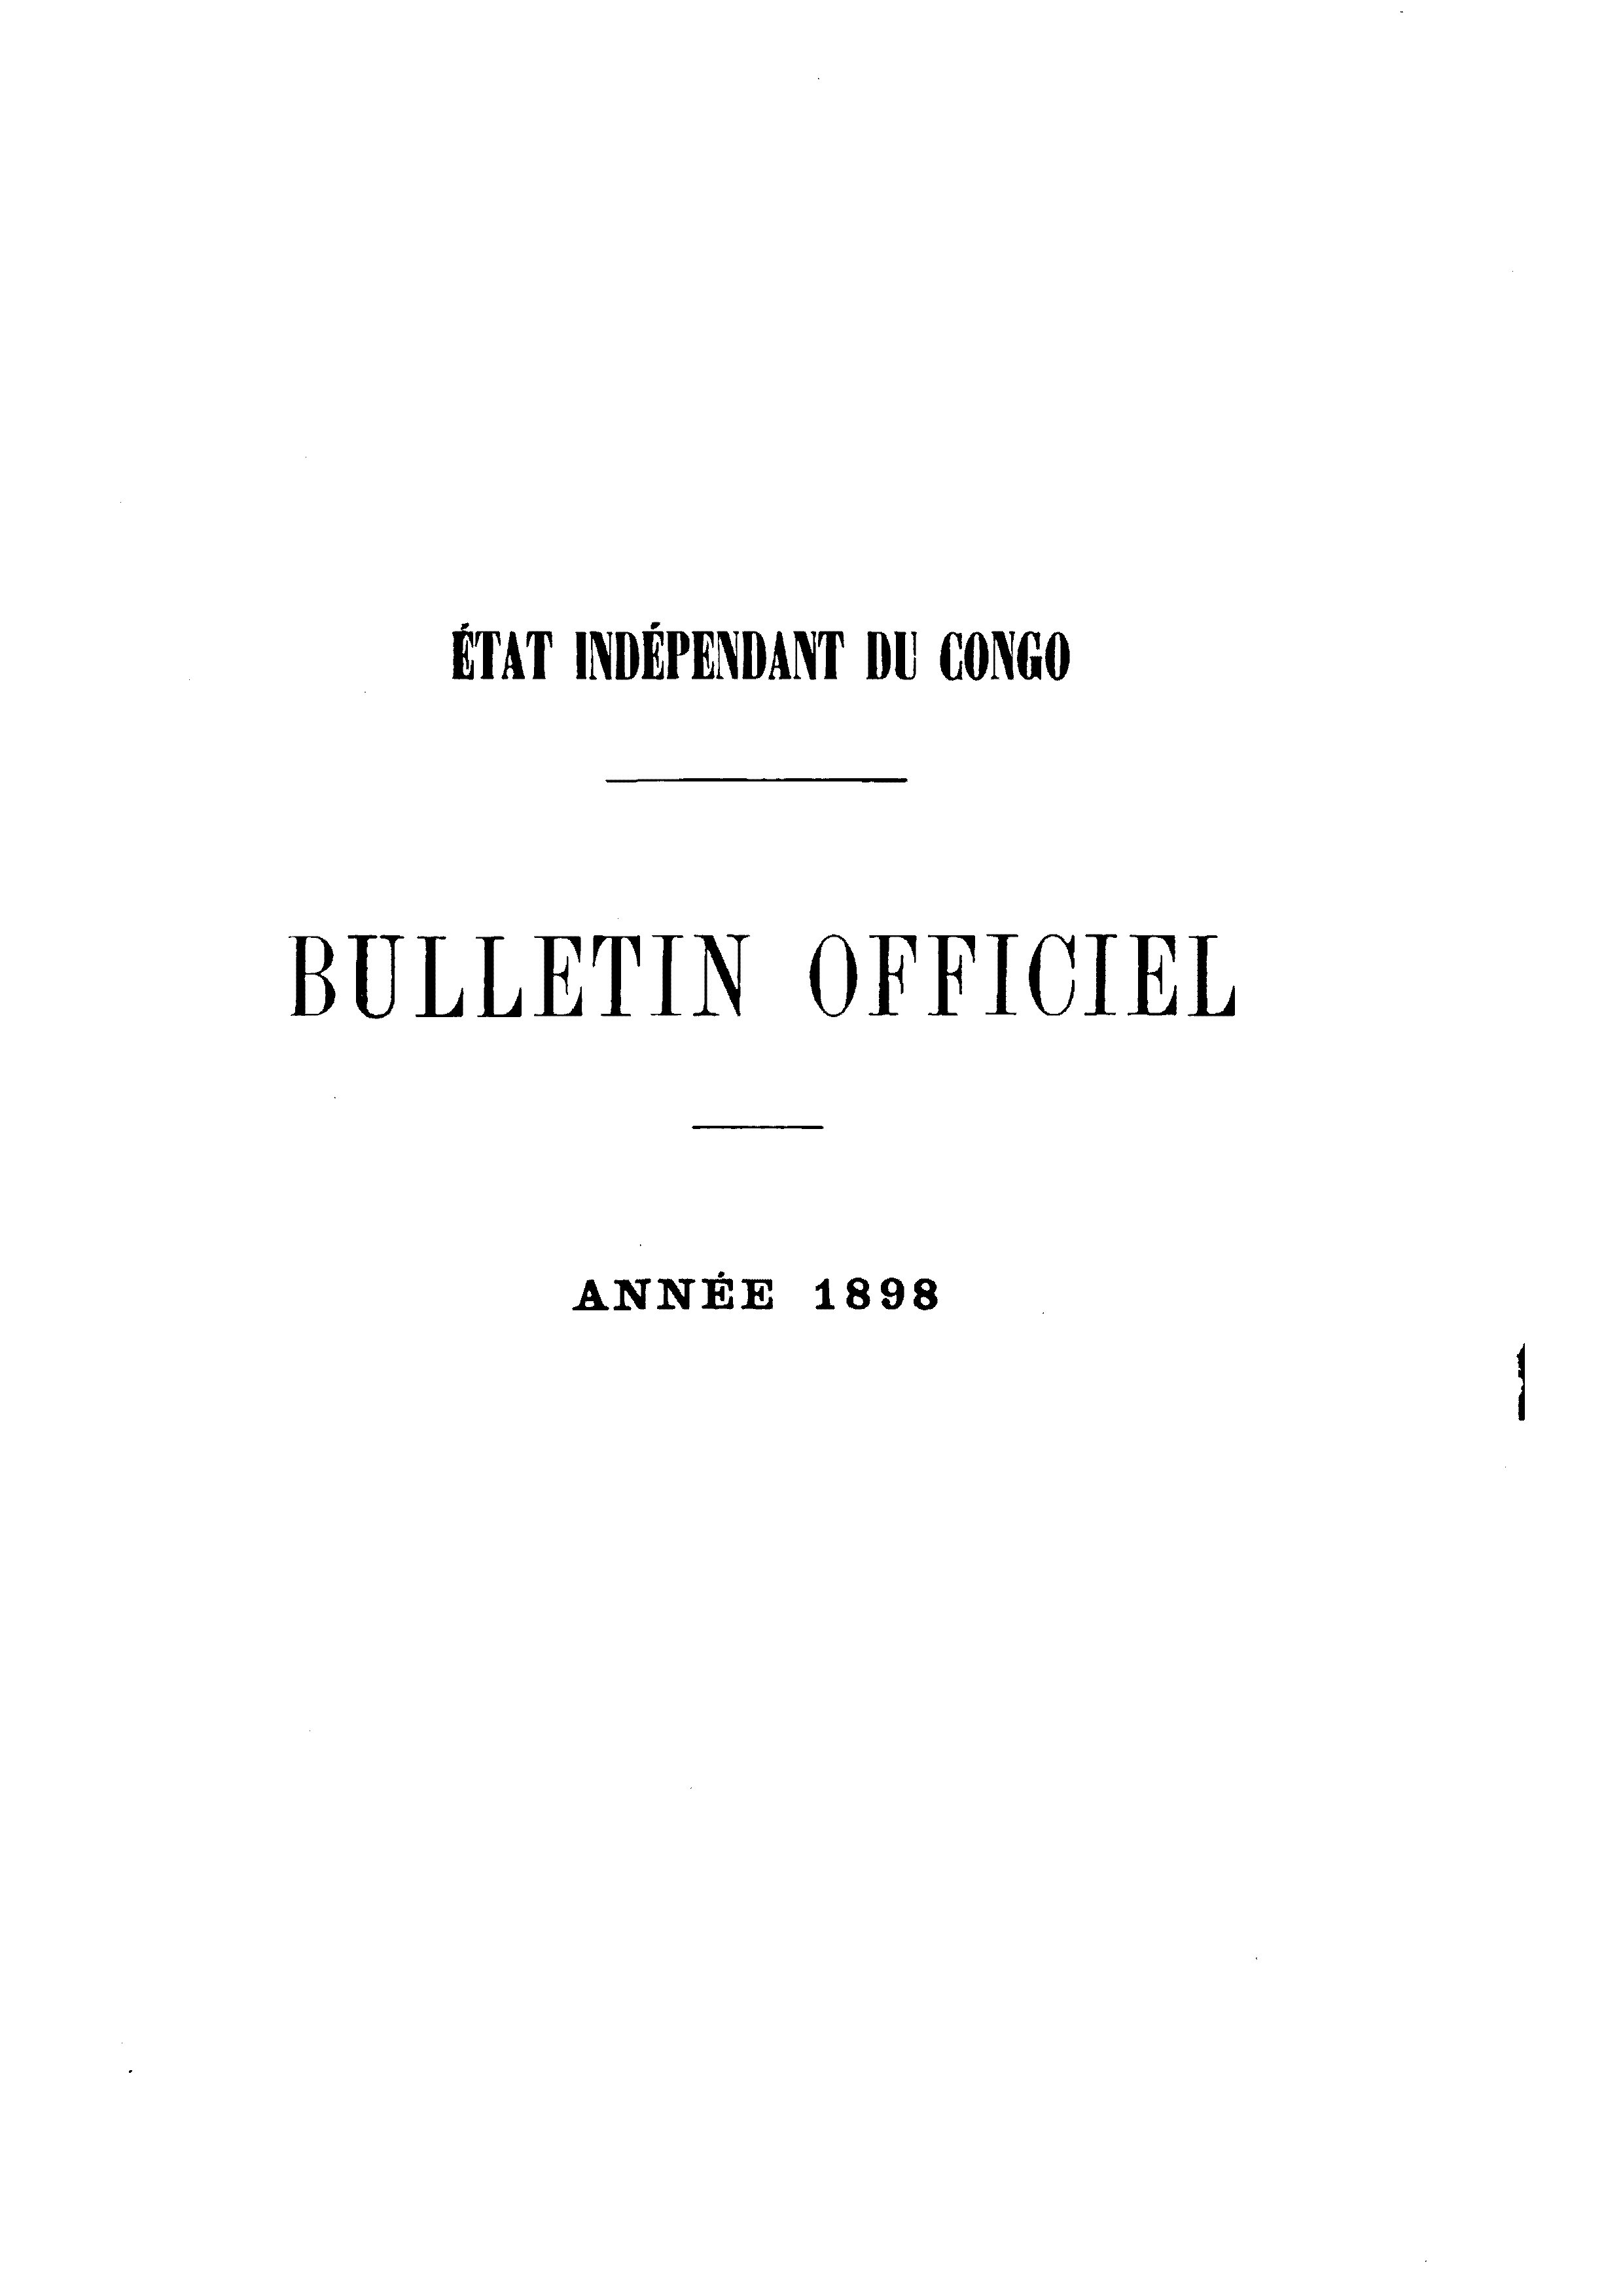 Book cover 202106132413: Etat Indépendant du Congo - roi Léopold II | Etat Indépendant du Congo - Bulletin Officiel – Année 1898